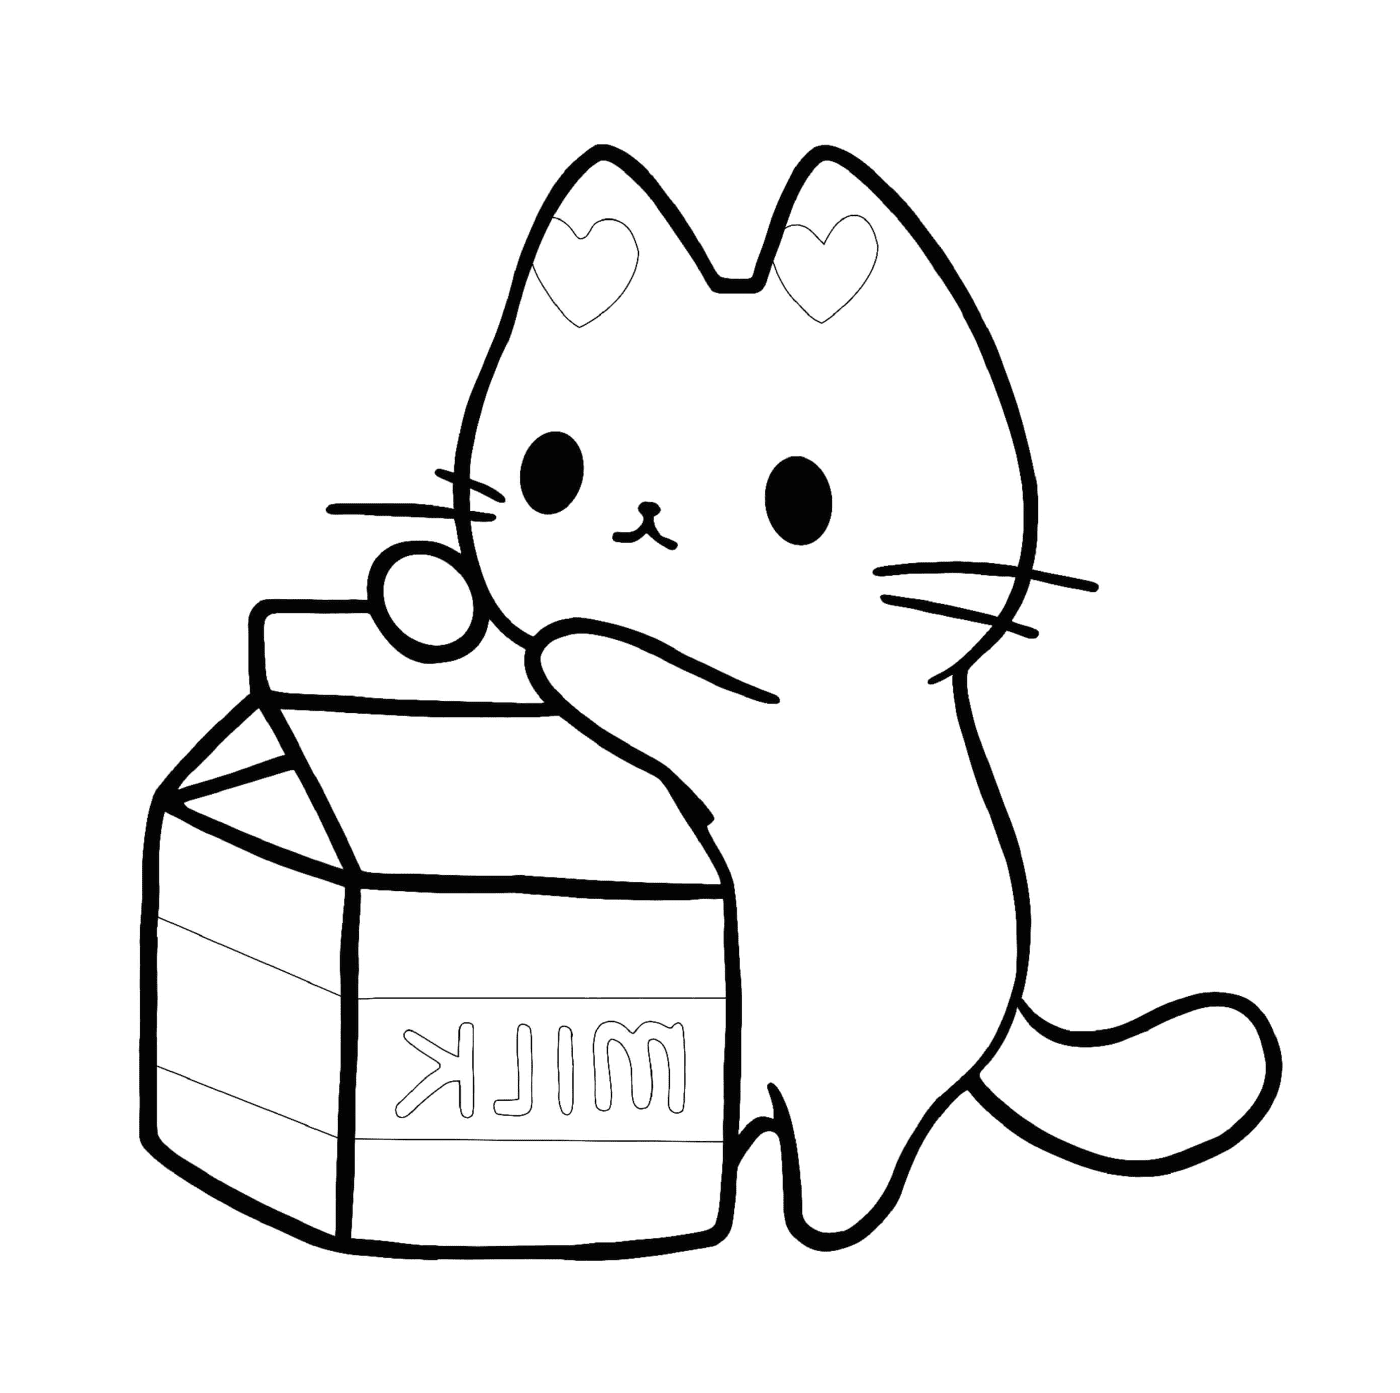  القطّة التي تحبّ الحليب 